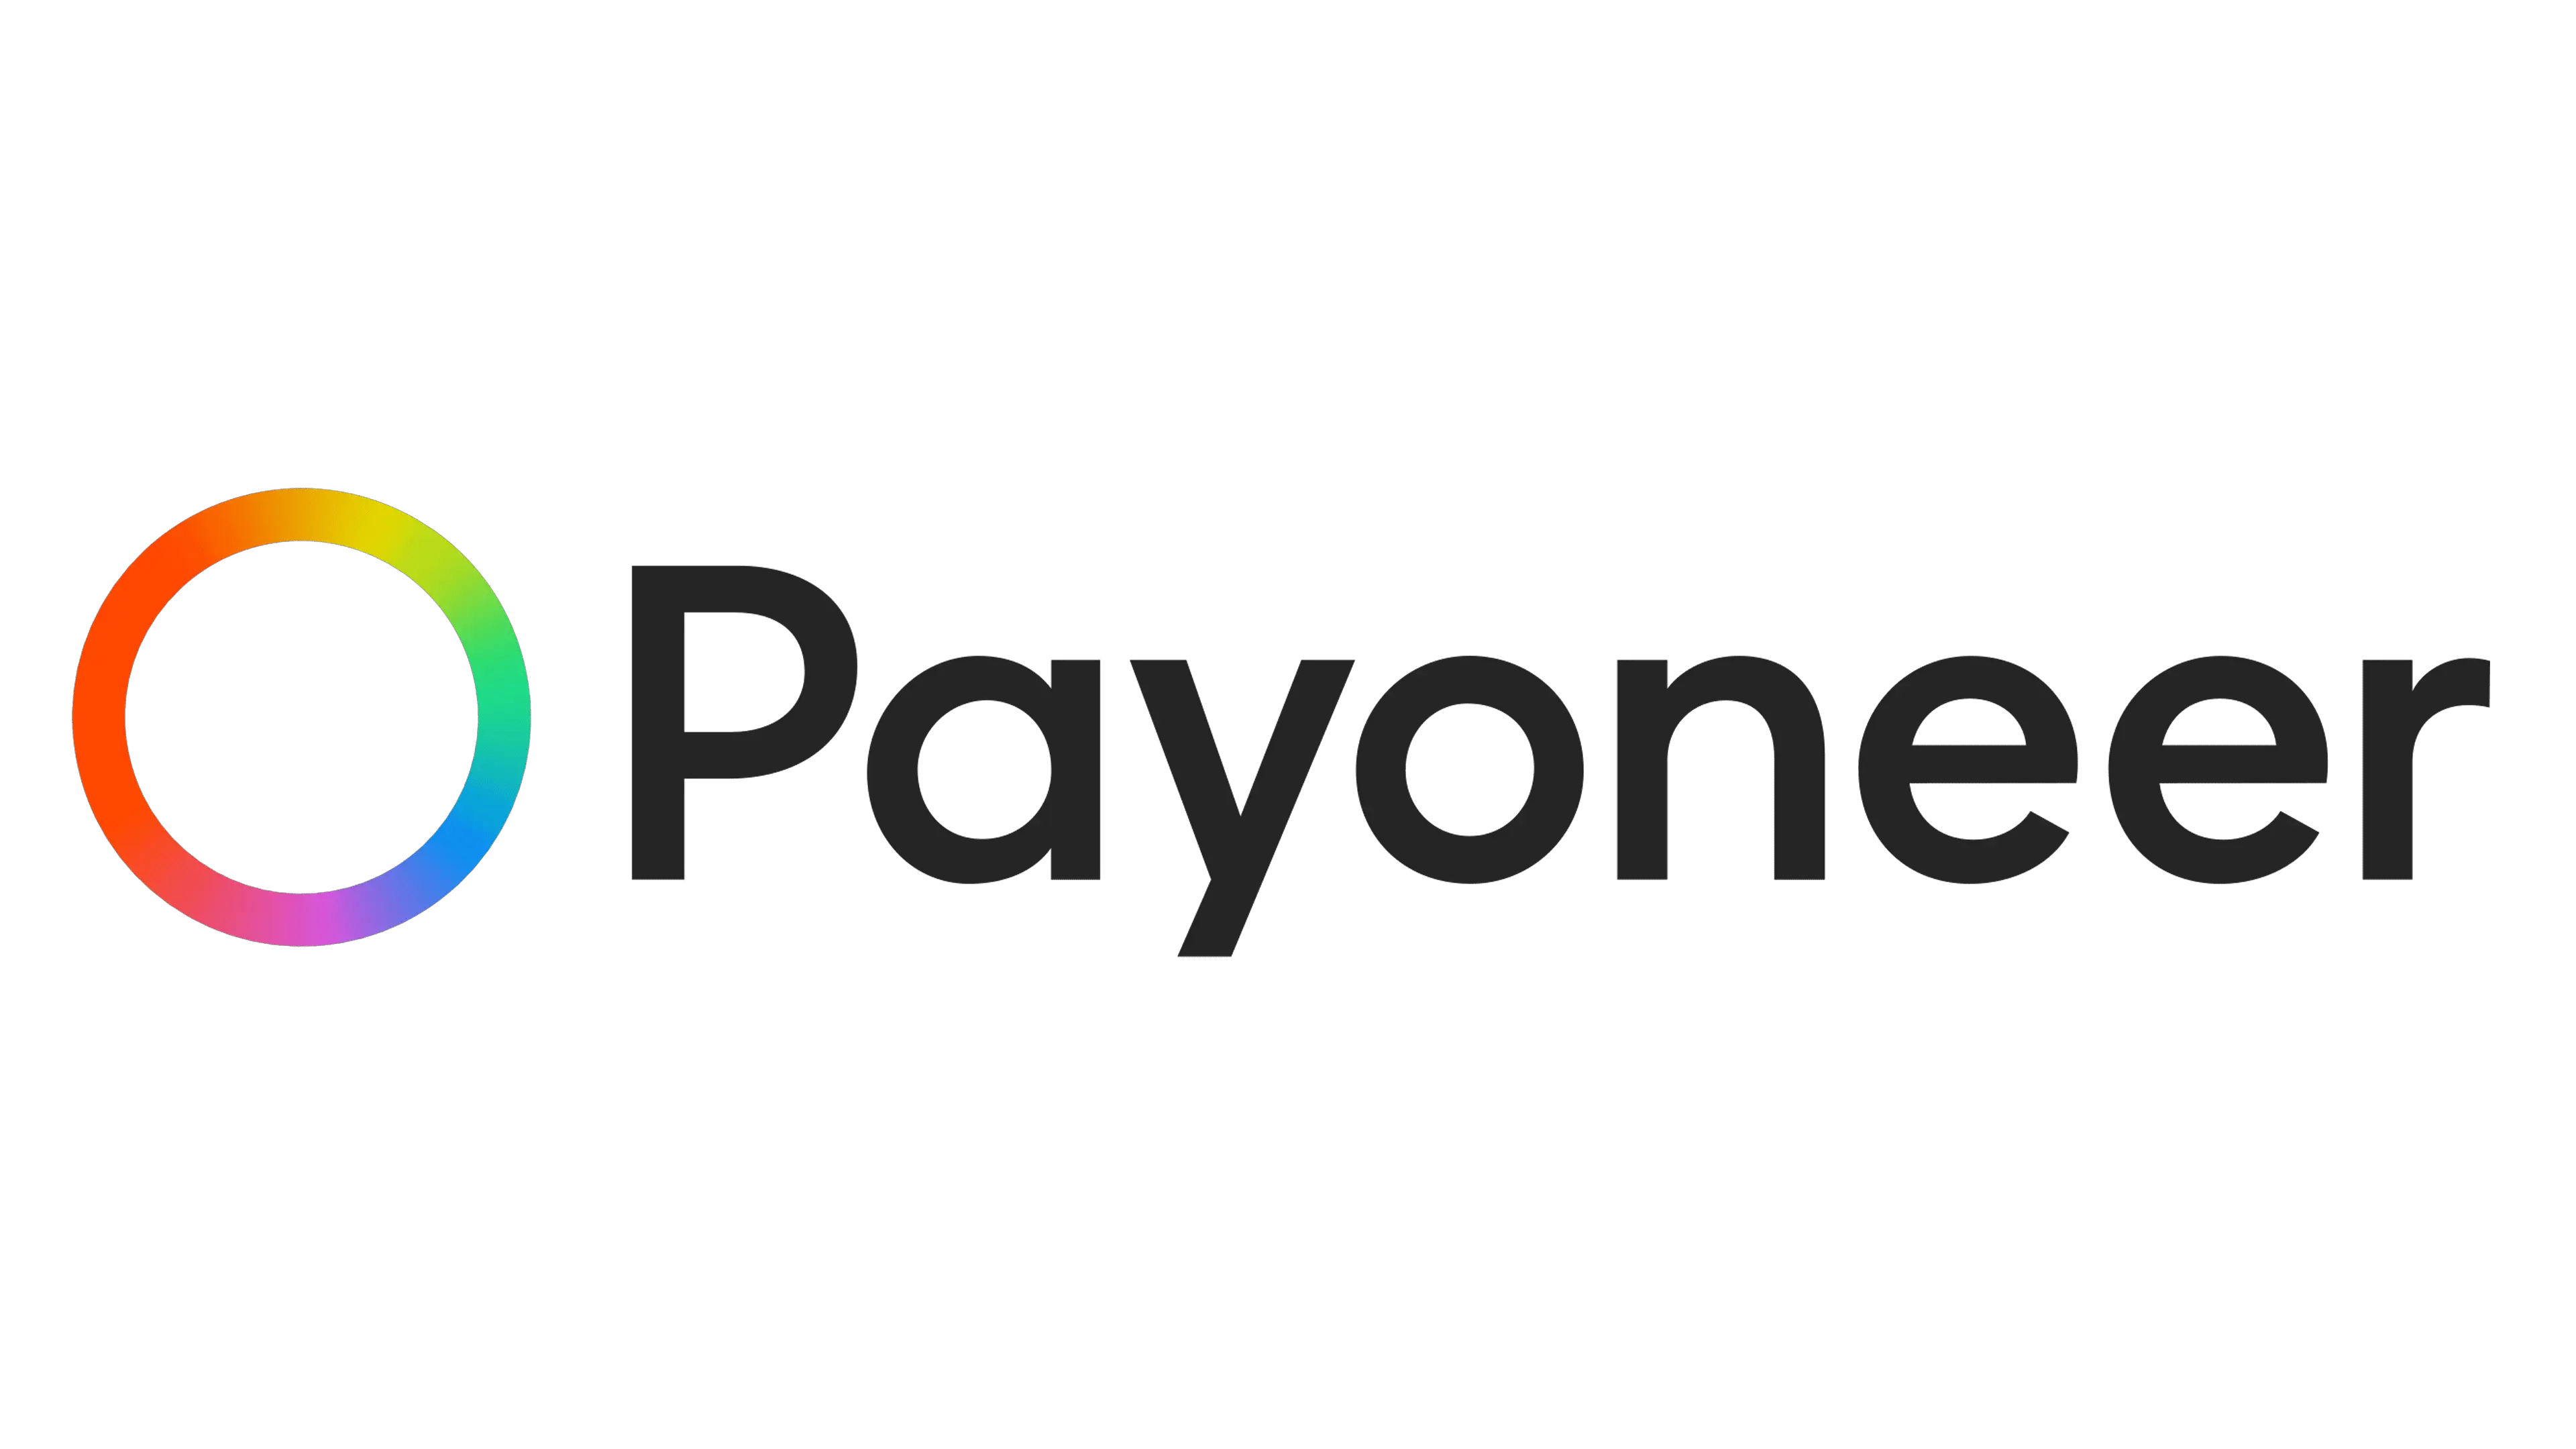 Payoneer Argentina opiniones: análisis a fondo después de probar la plataforma por varios años